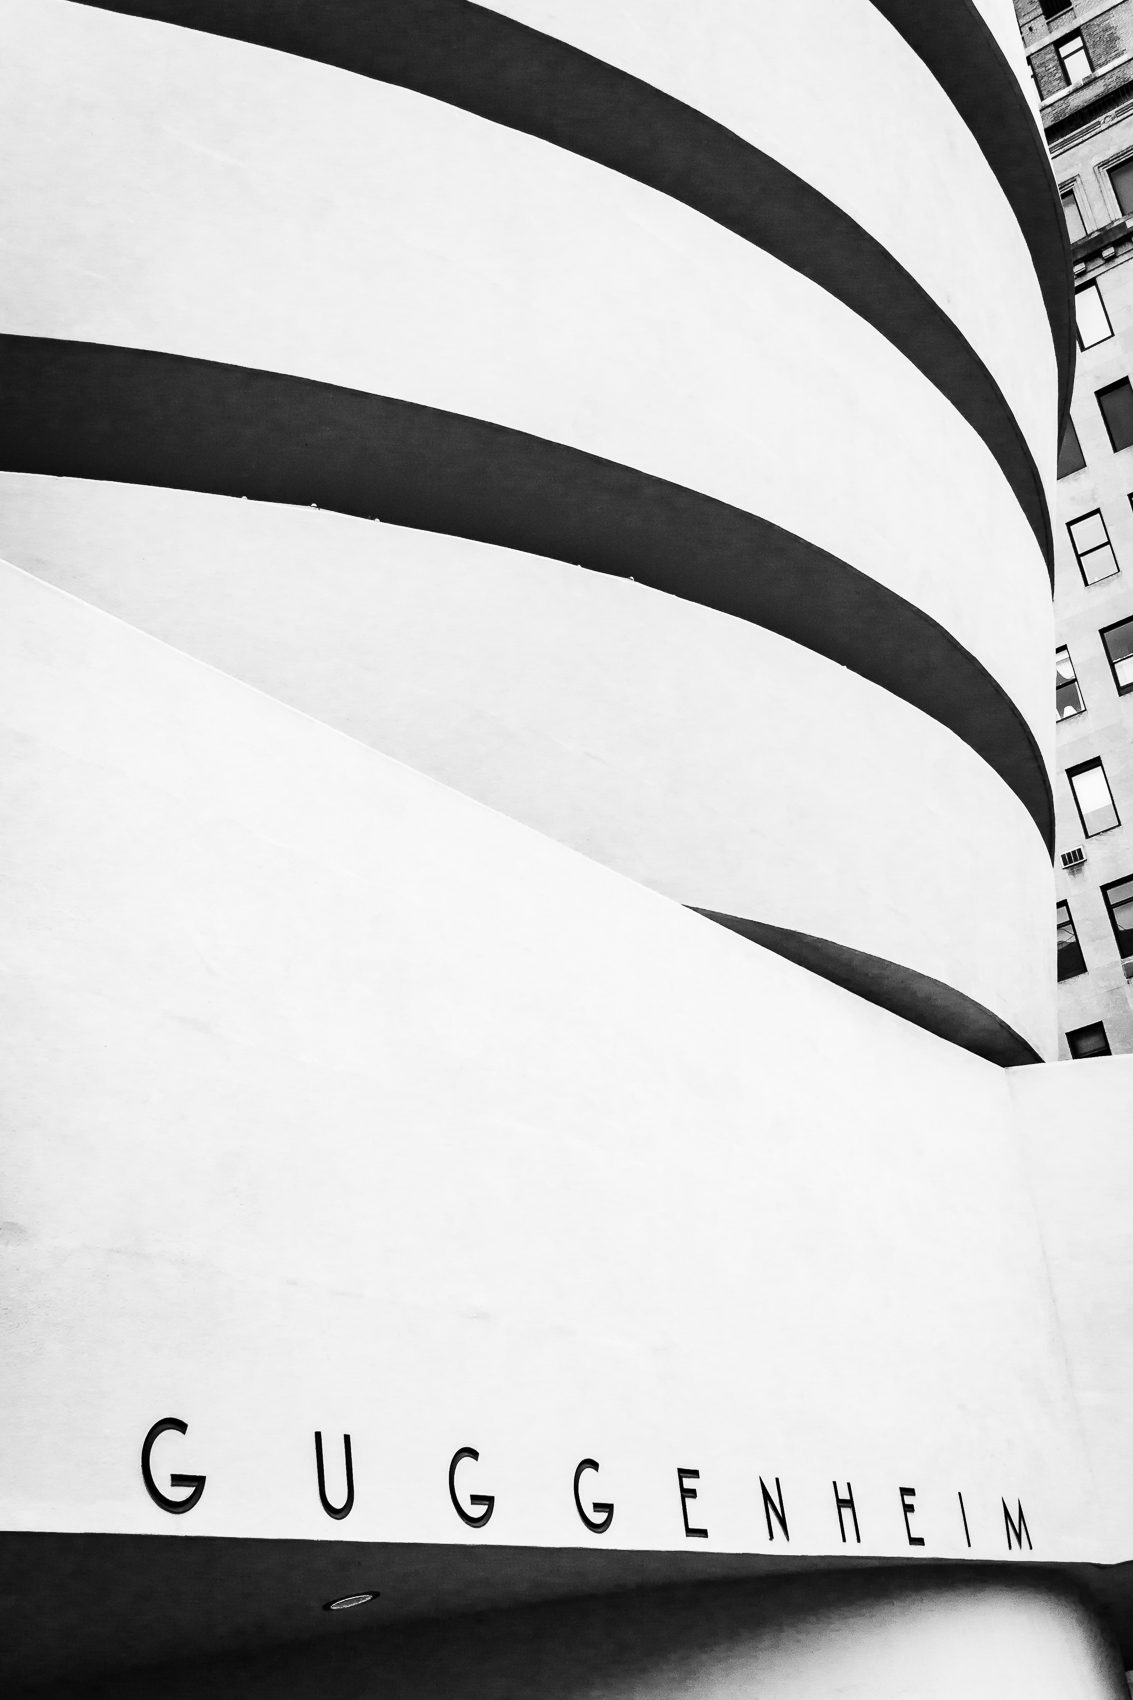 Detail of the Guggenheim Museum, New York City NM003